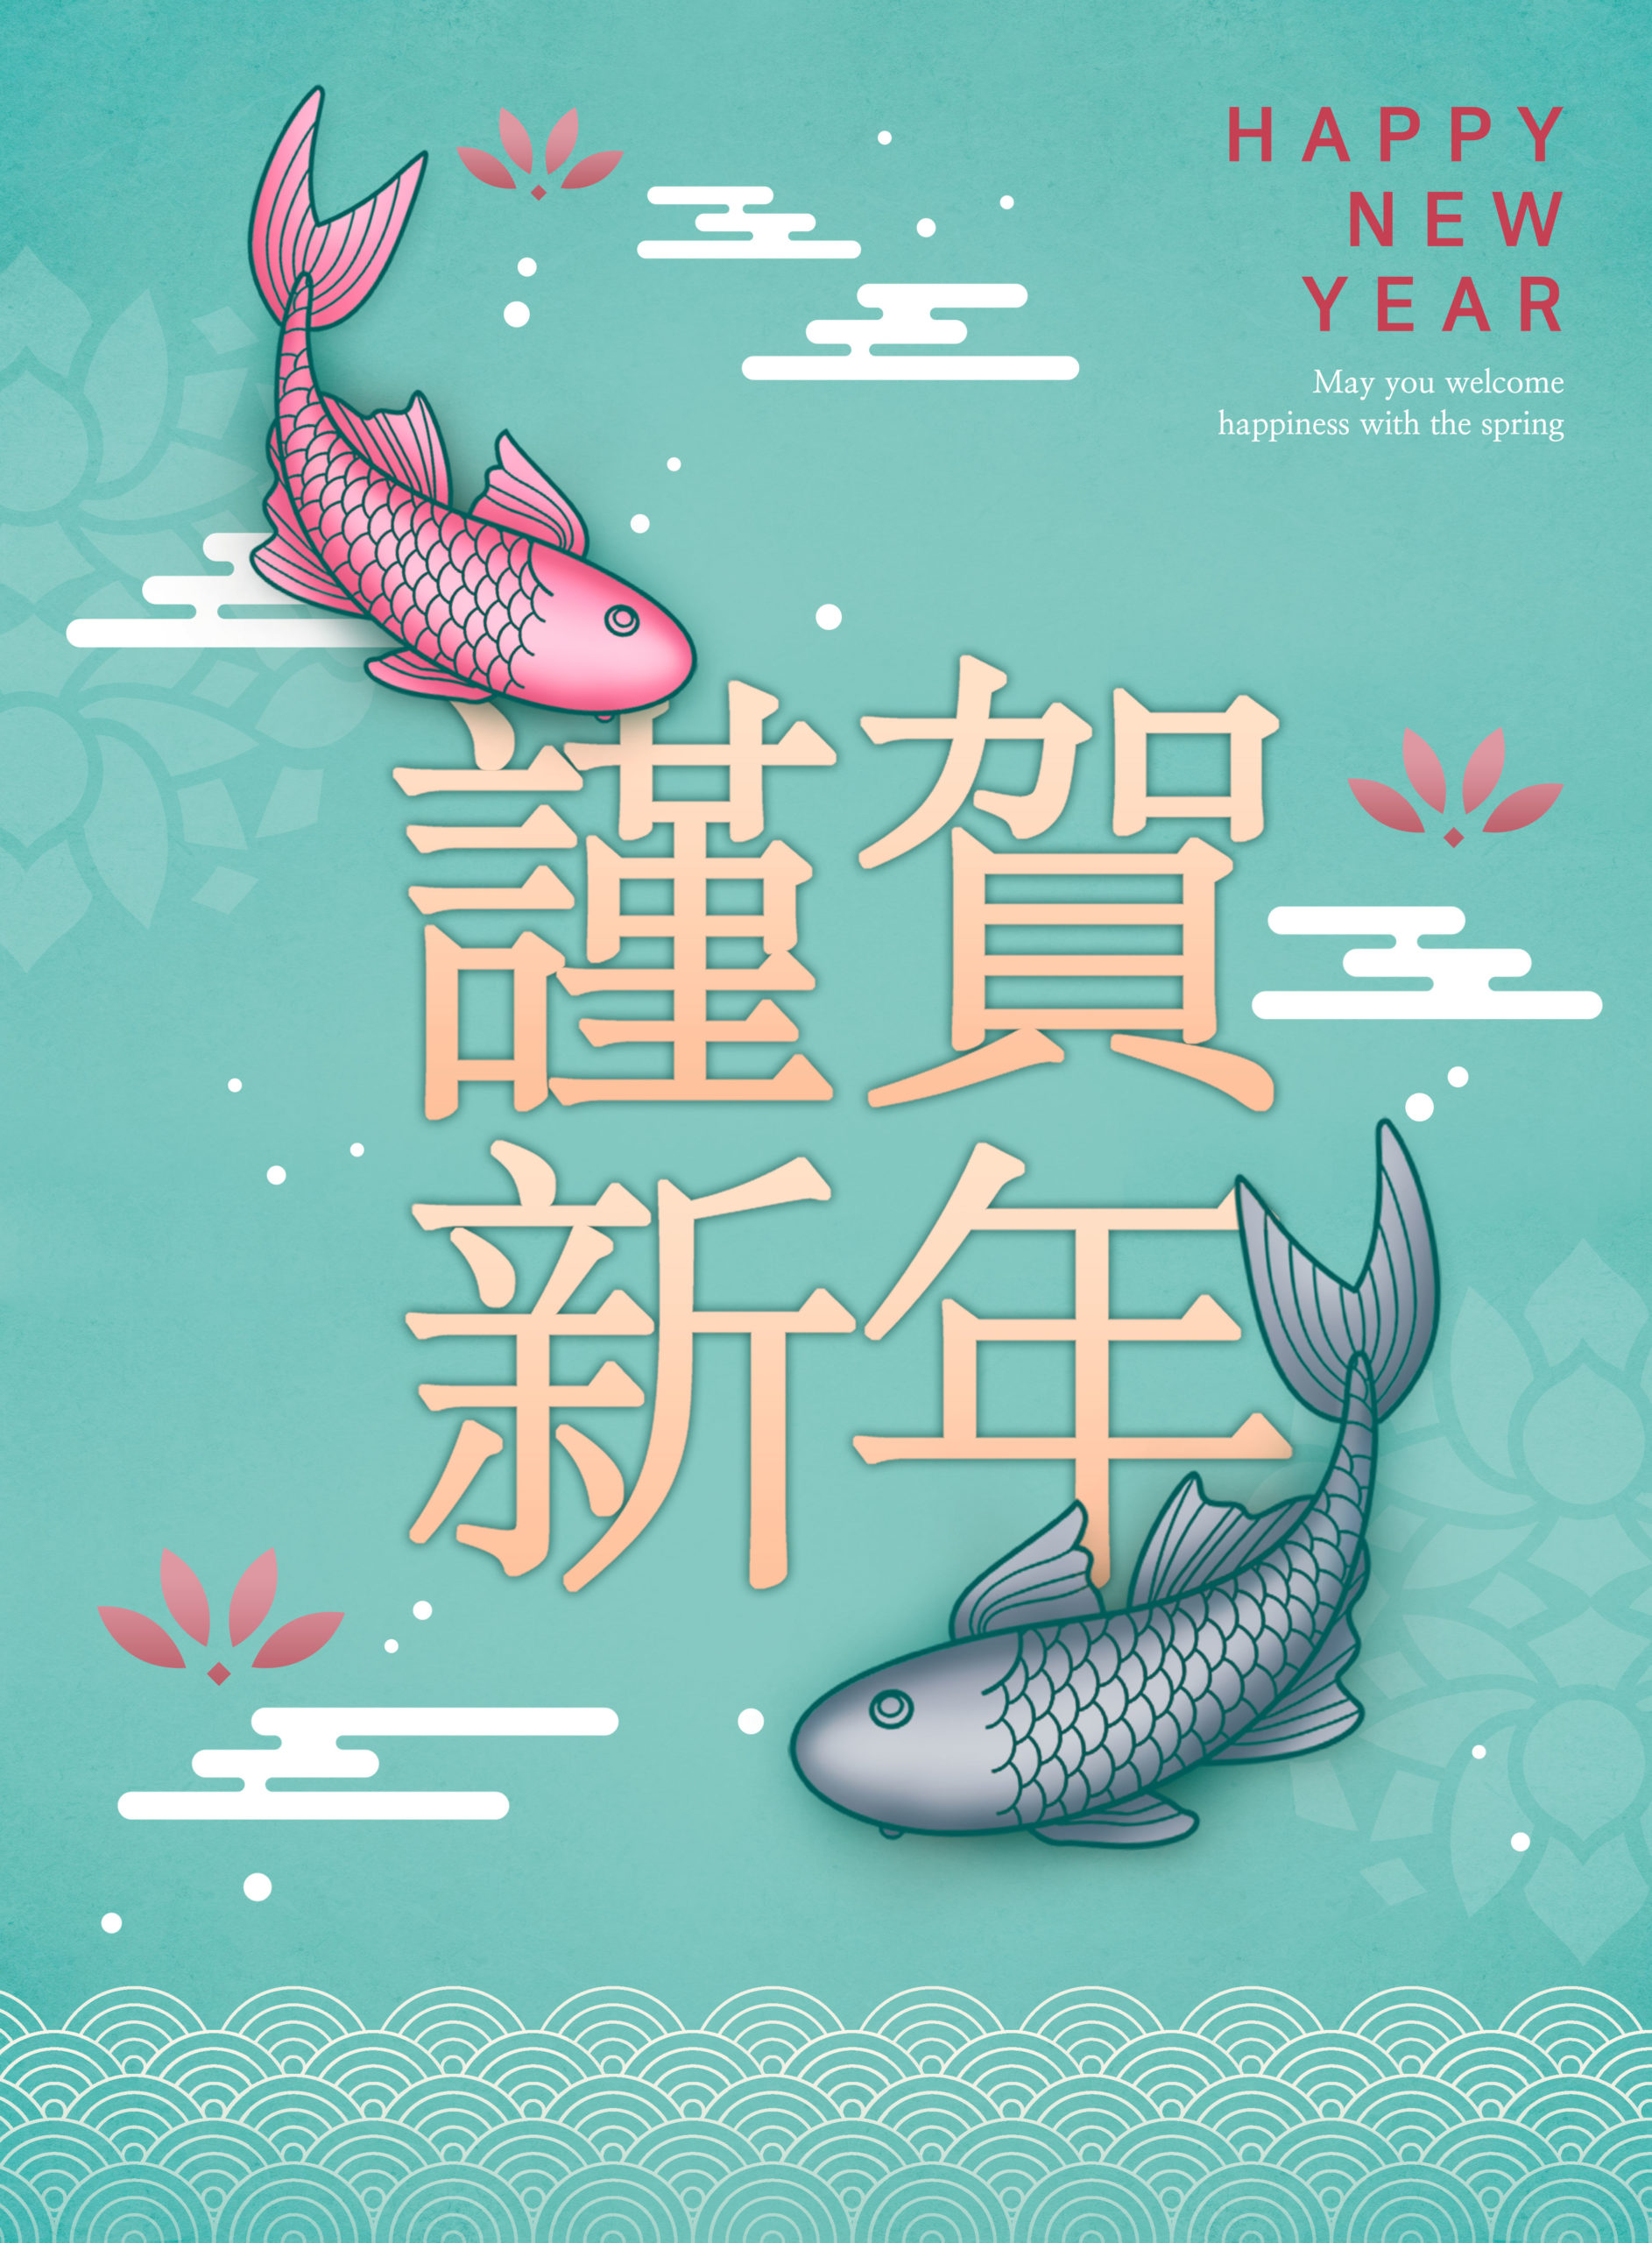 中国元素好运锦鲤新年主题海报PSD素材素材库精选模板插图